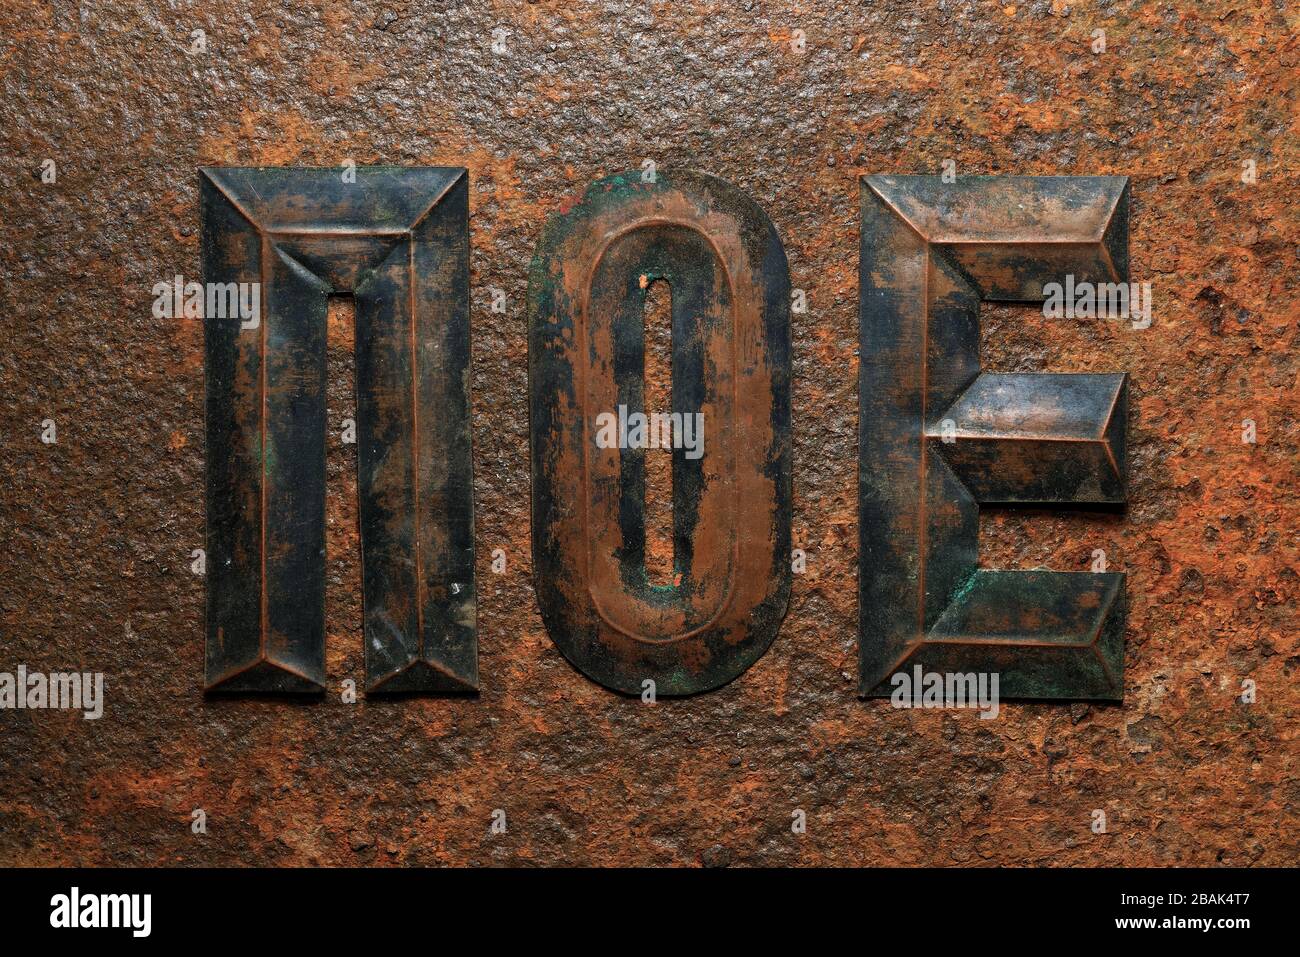 Fondos y texturas: Grupo de letras cirílicas de cobre en relieve envejecidas sobre una superficie de metal oxidado muy corroída Foto de stock